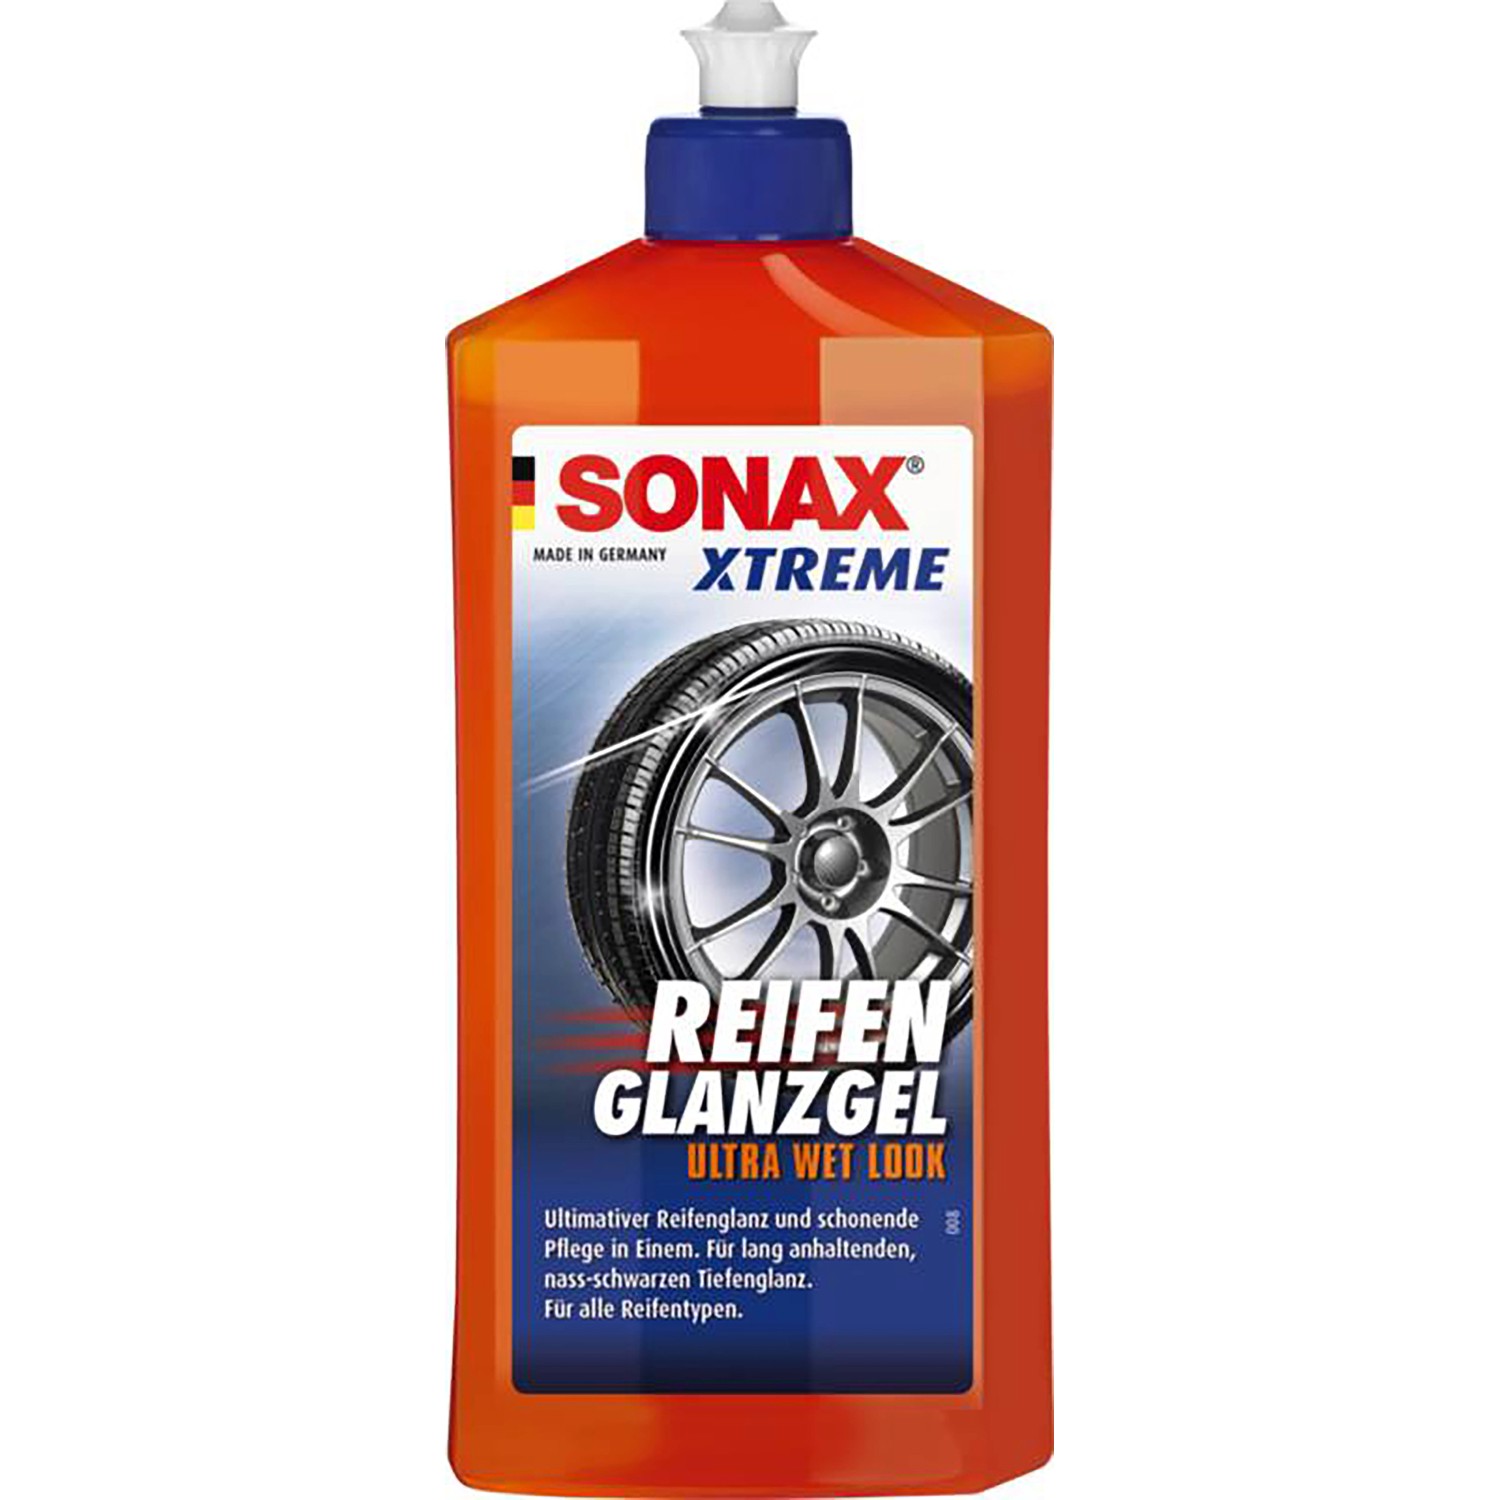 Sonax Xtreme Reifen Glanzgel 500 ml